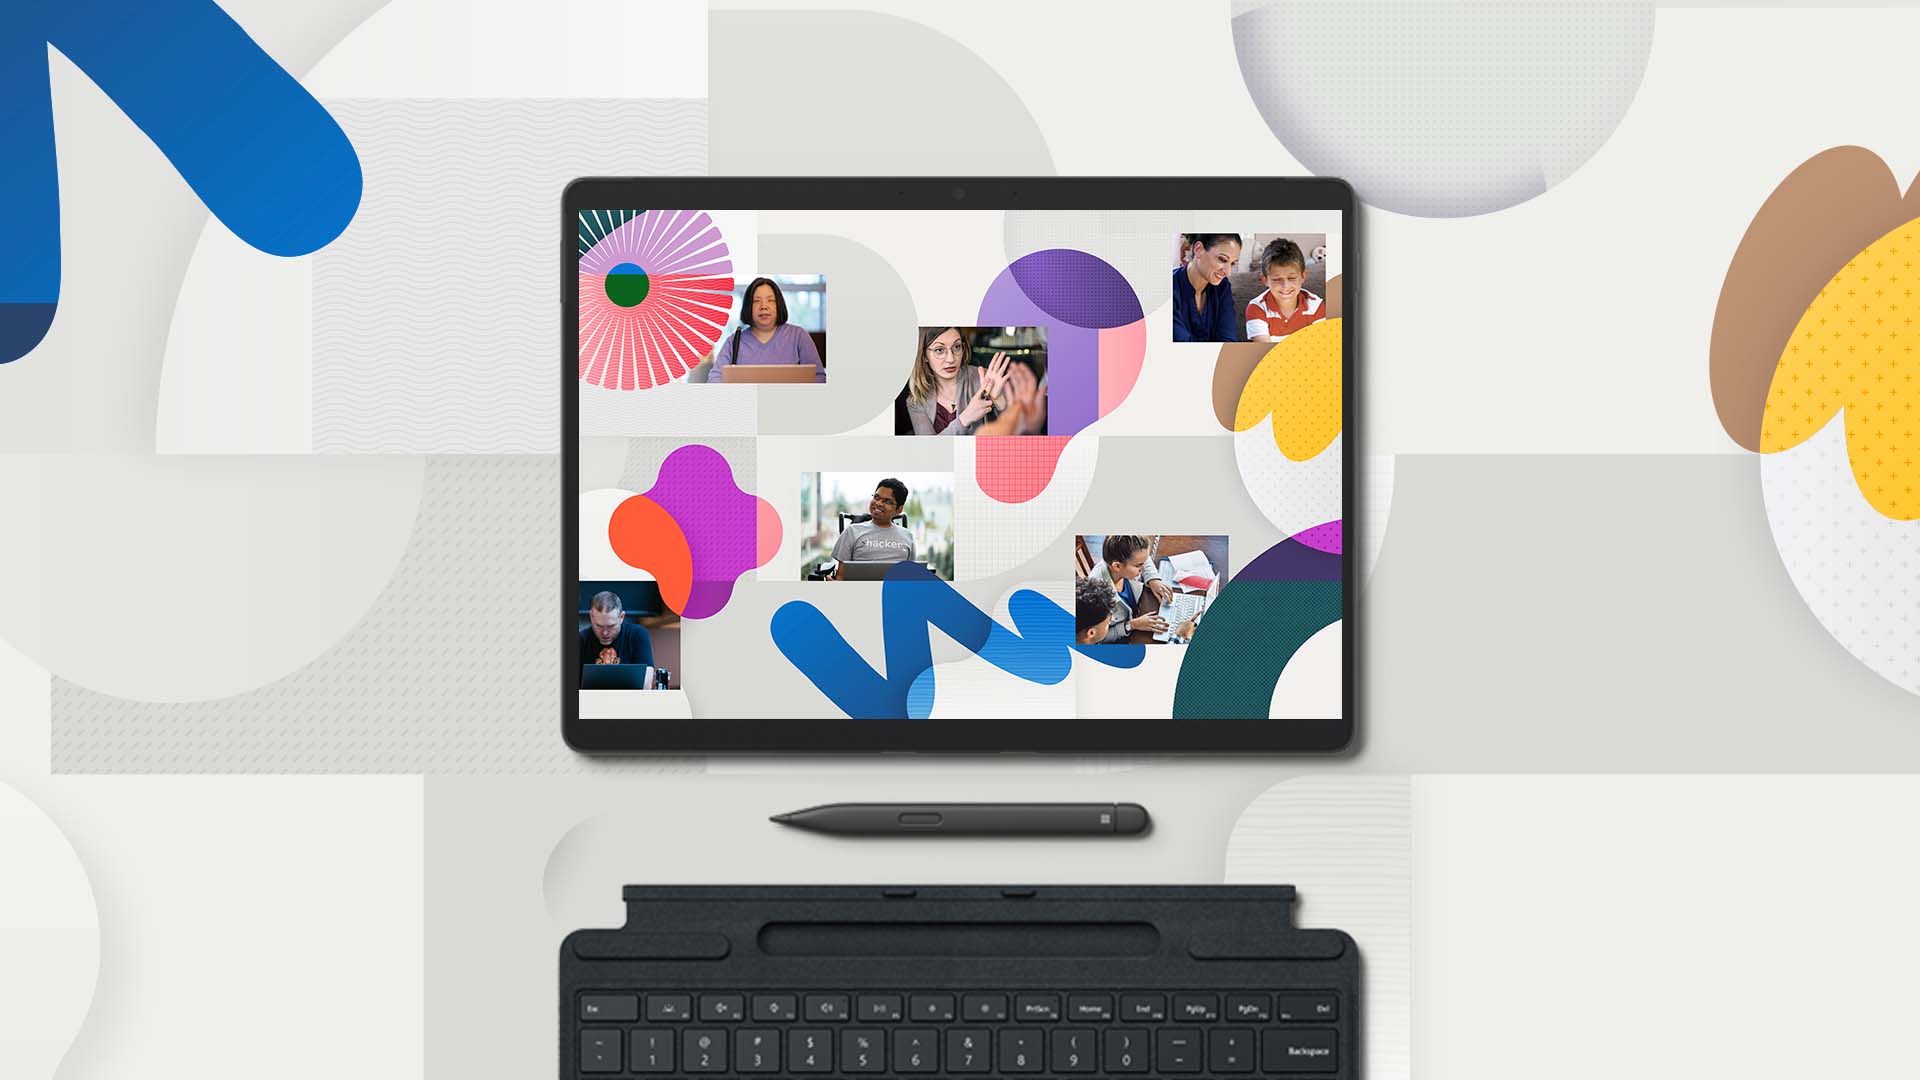 Tanuló és dolgozó emberek kollázsa látható egy Surface Pro 8 eszközön, alatta egy Surface tollal és billentyűzetes tokkal. Színes absztrakt vonalrajz veszi körül.